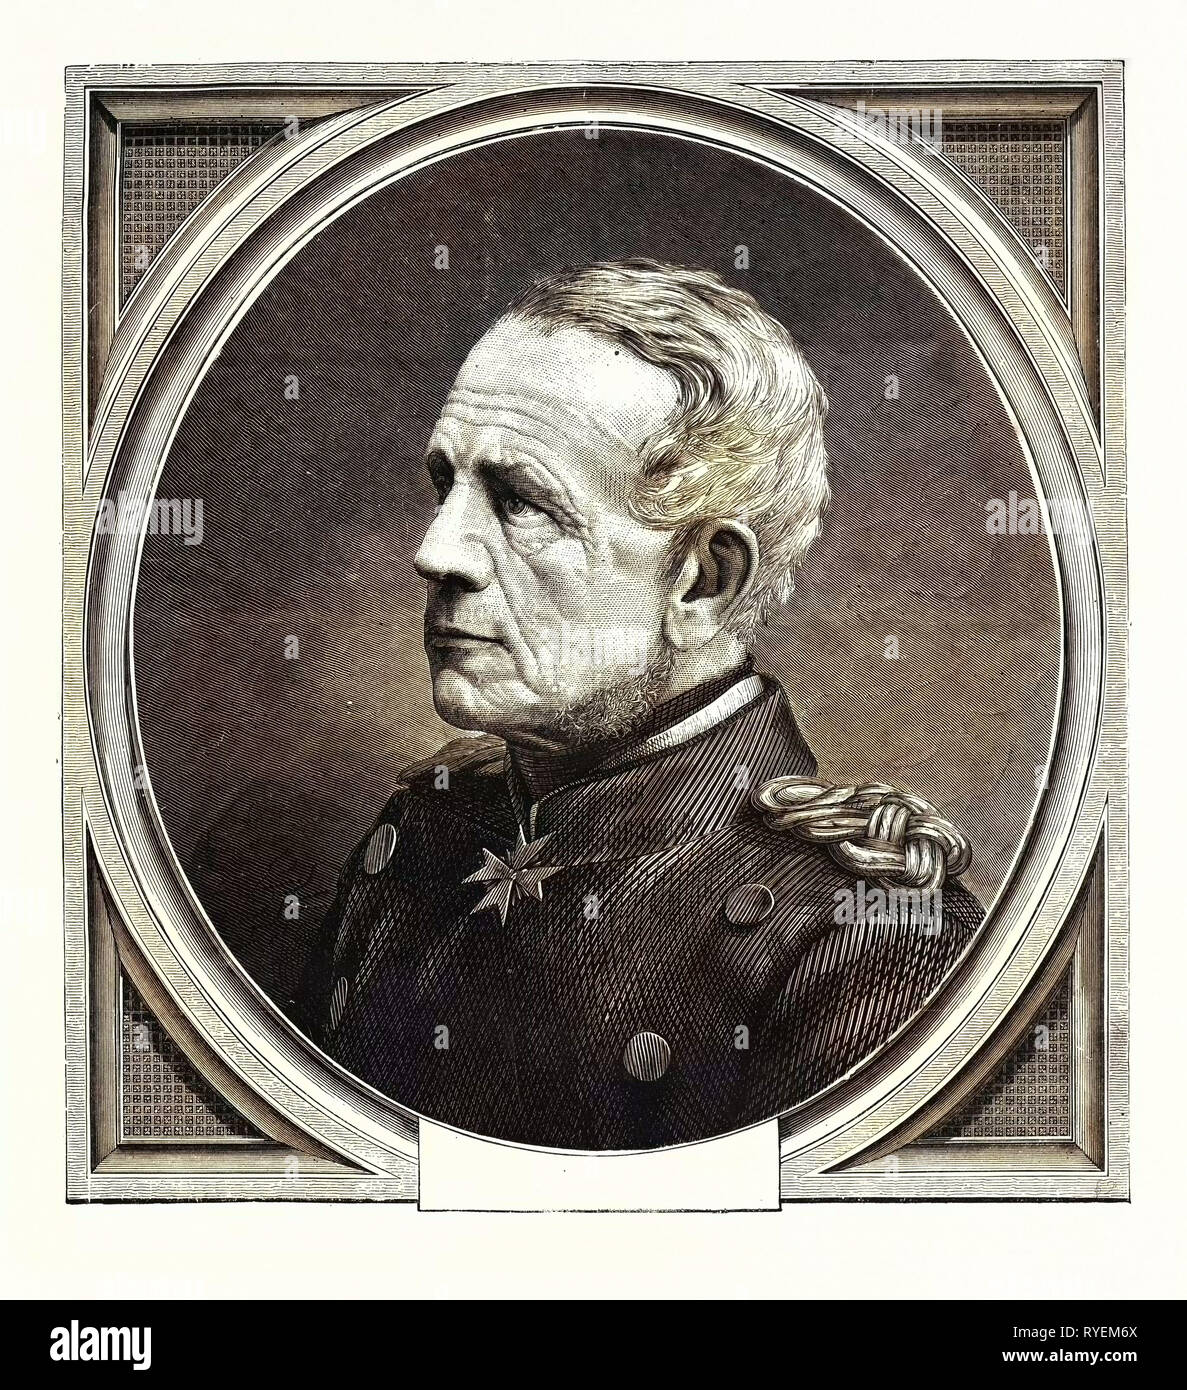 Deutsch-französischen Krieg: Die Feld-Marechal Graf Von Moltke, Chef des Generalstabs der preußischen Armee Stockfoto